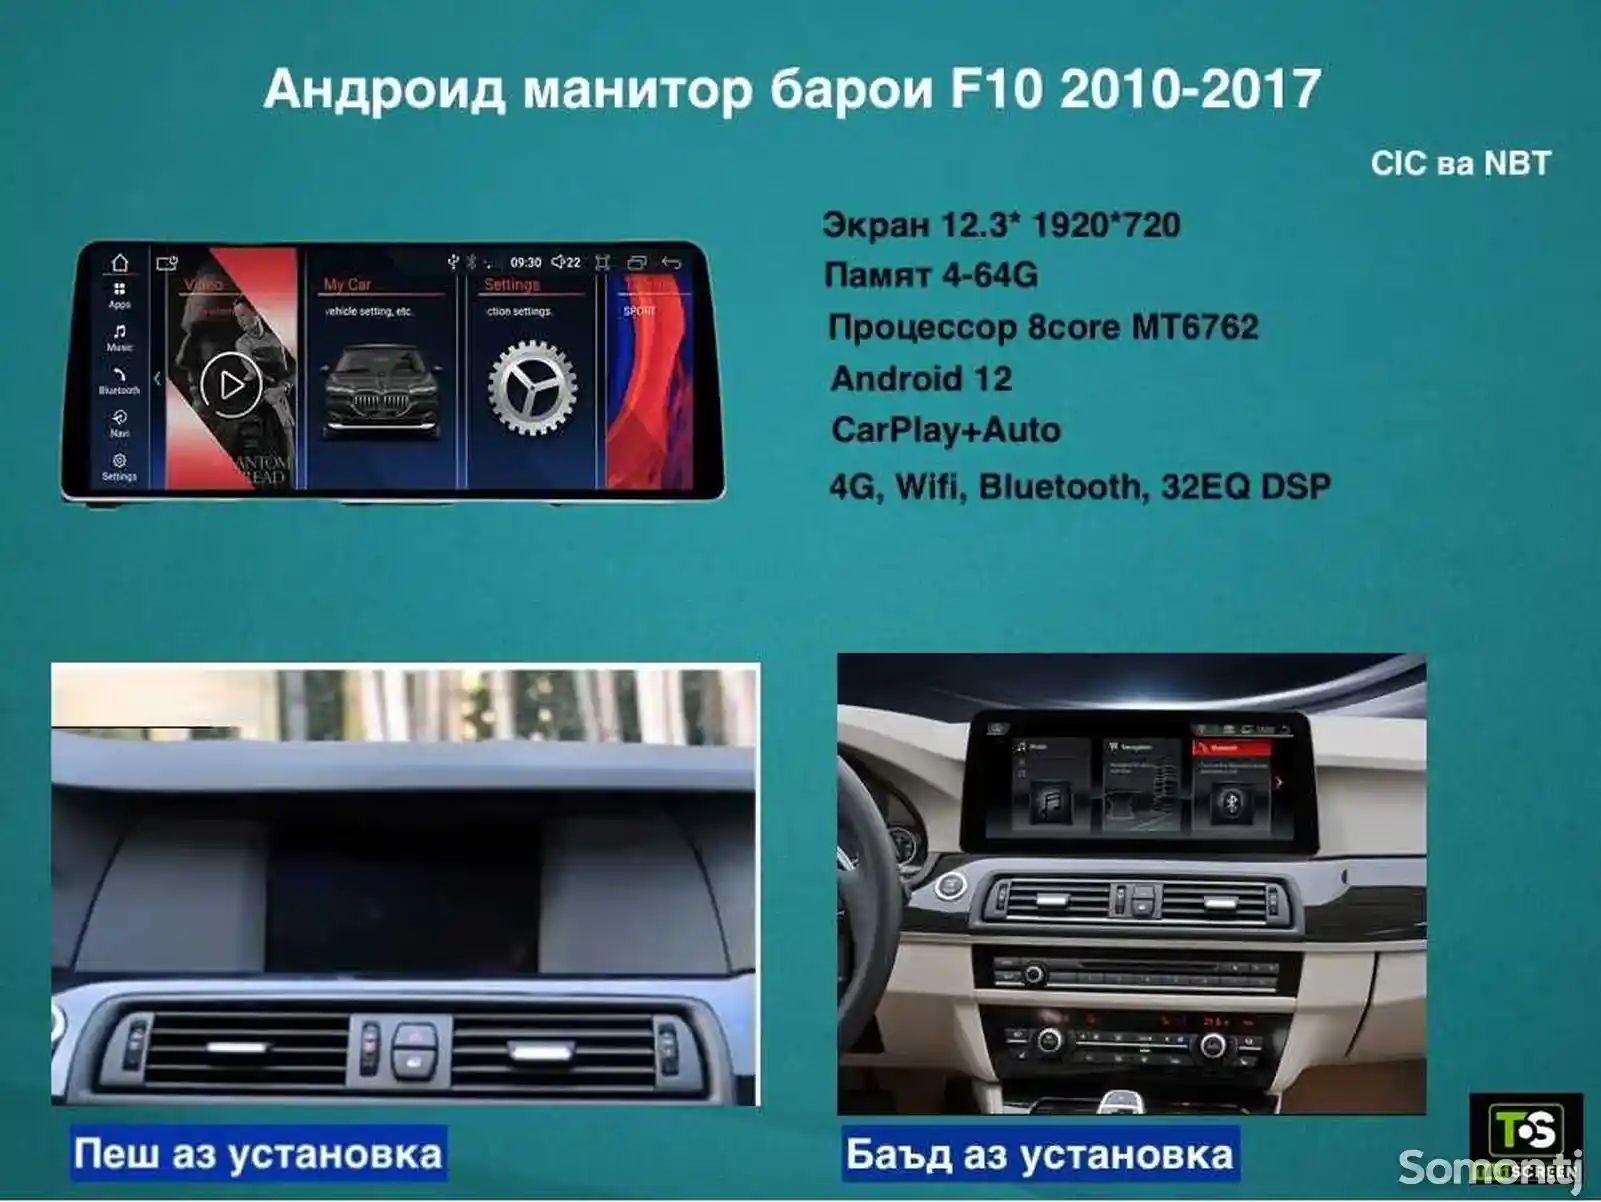 Андроид монитор для BMW F10 2010-2017 CIC и NBT 12.3 дюймов-2